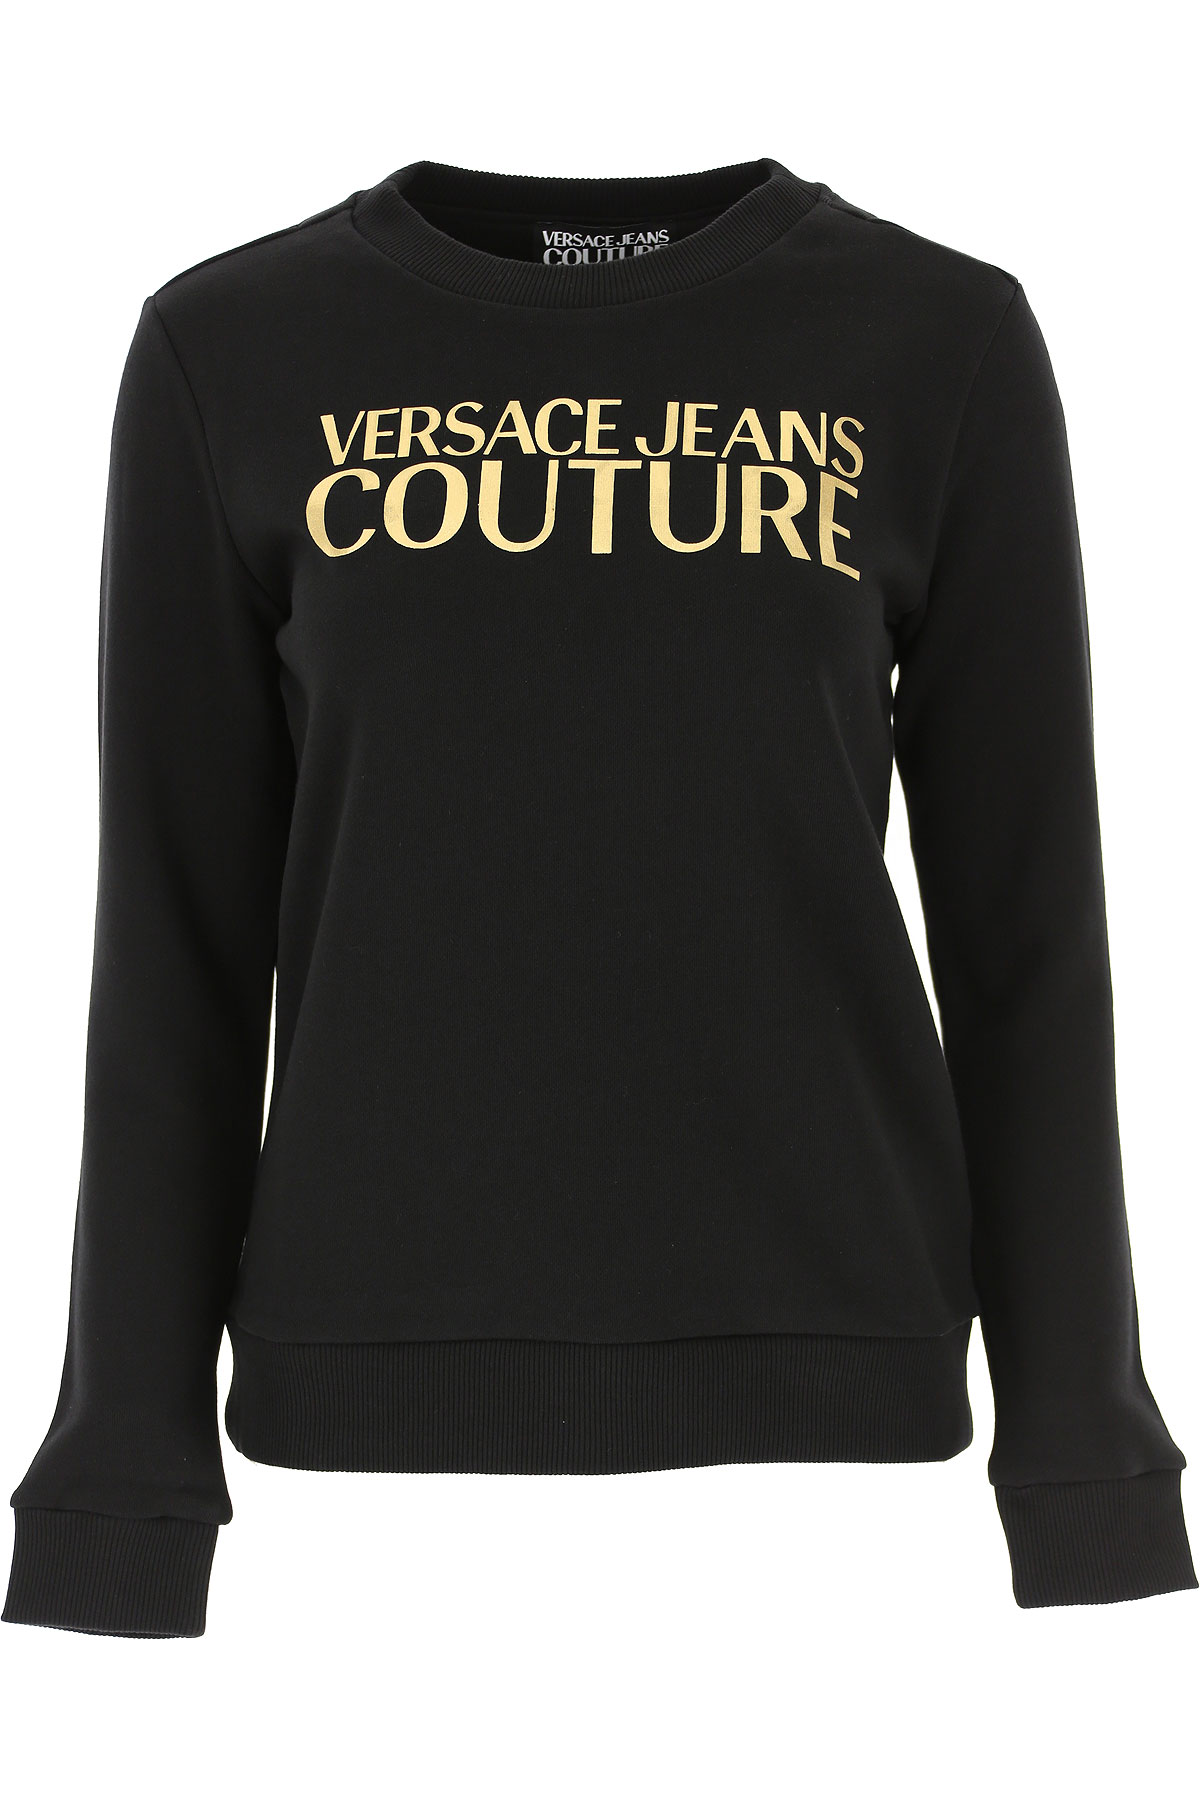 Versace Jeans Couture Sweatshirt für Damen, Kapuzenpulli, Hoodie, Sweats Günstig im Sale, Schwarz, Baumwolle, 2017, 38 44